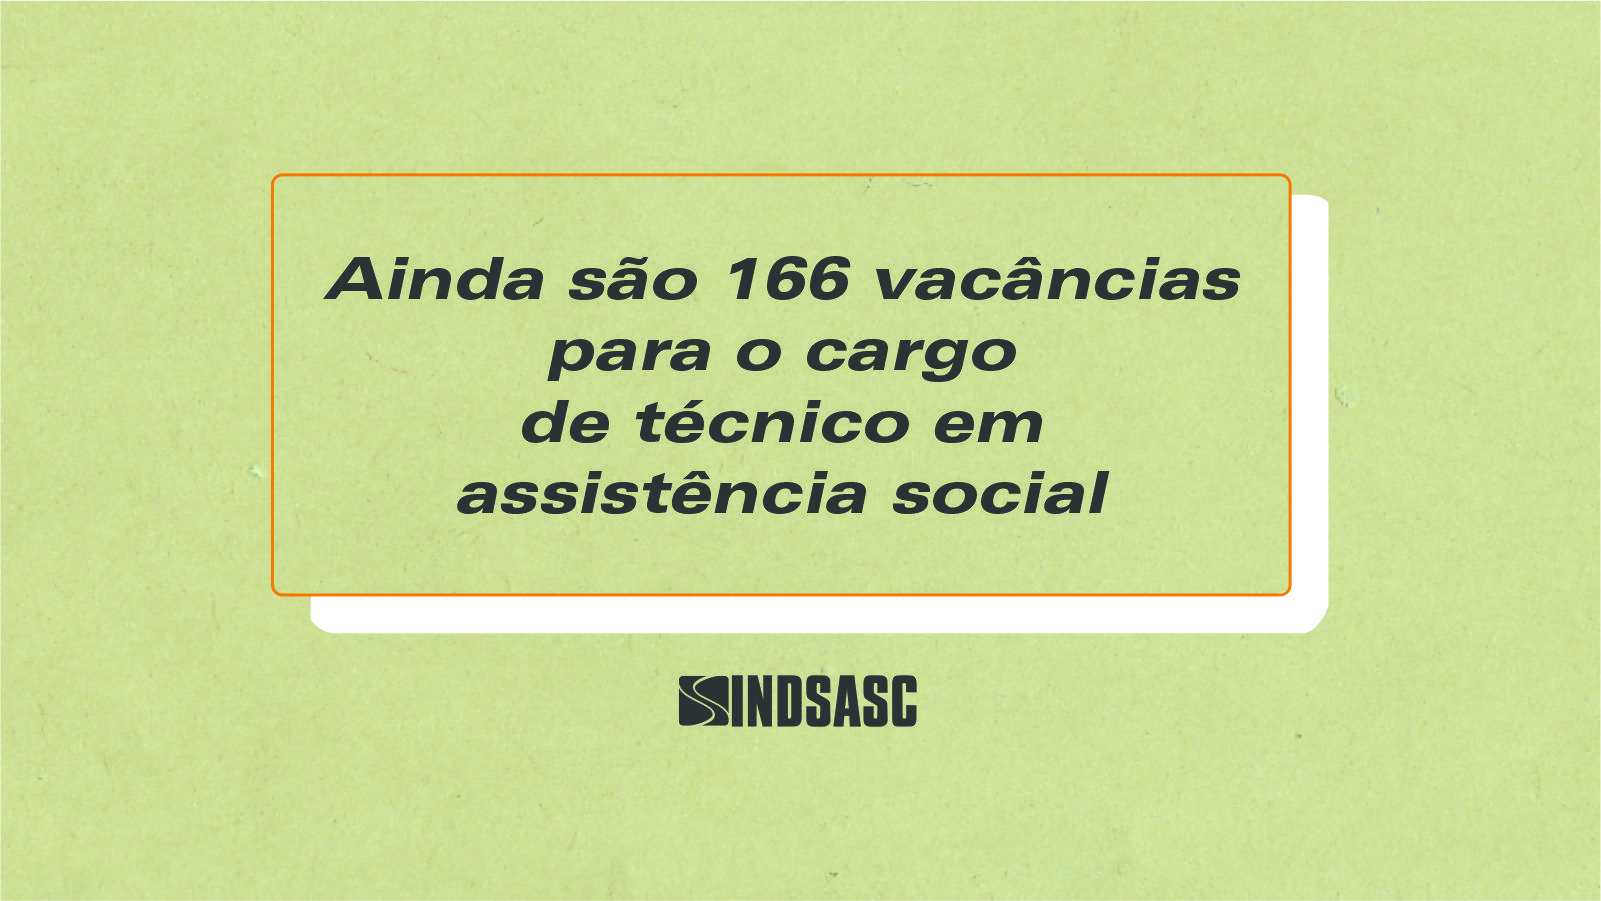 Ainda são 166 vacâncias para o cargo de técnico em assistência social